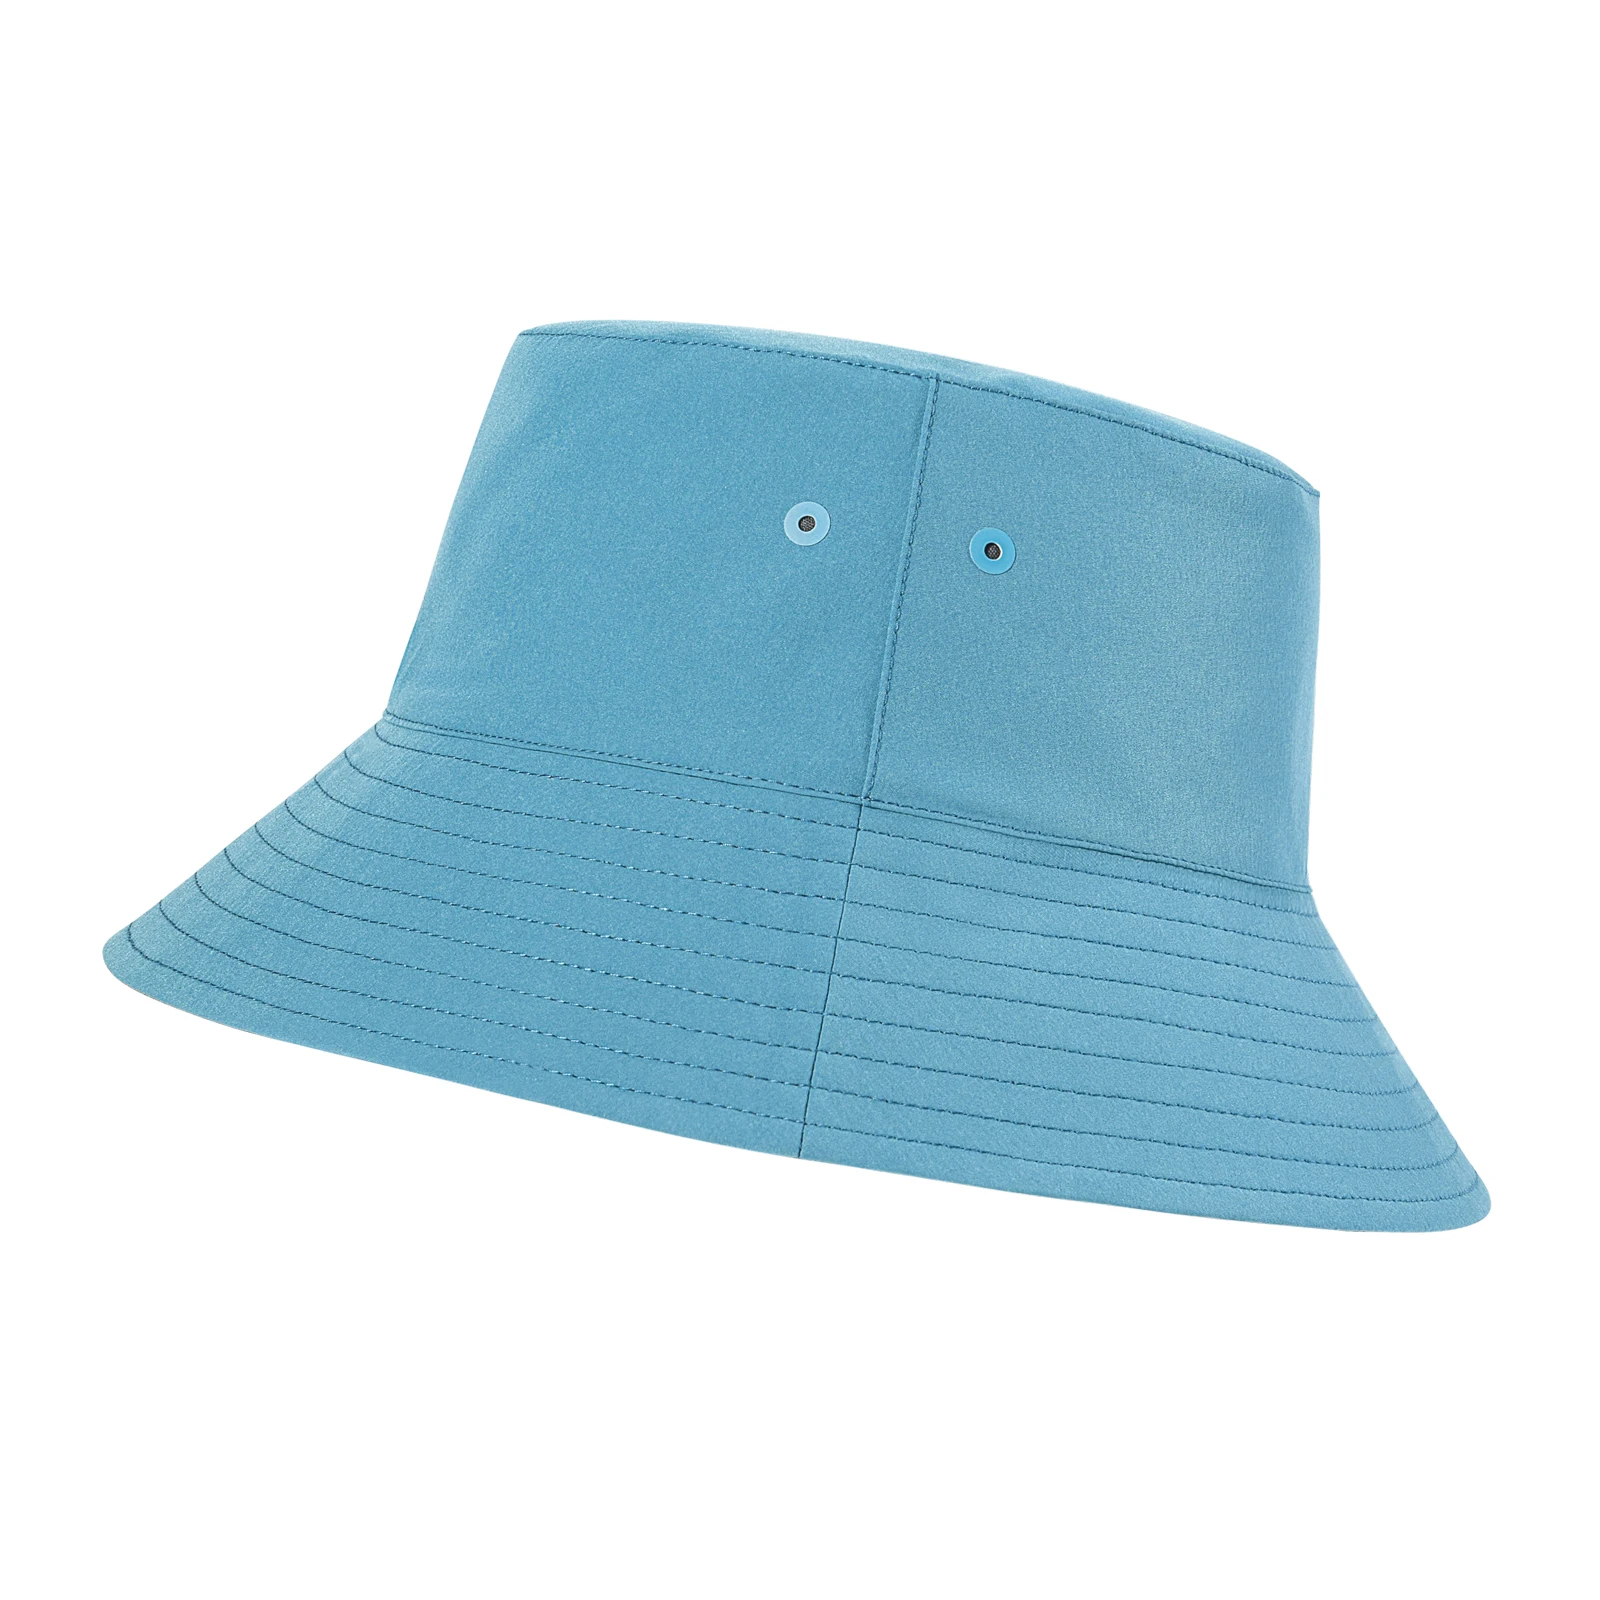 VOBOOM Unisex Outdoor Bucket Hats Packable Sun Cap Reversible Travel Hat for Men, Women, Teens, Girls 1